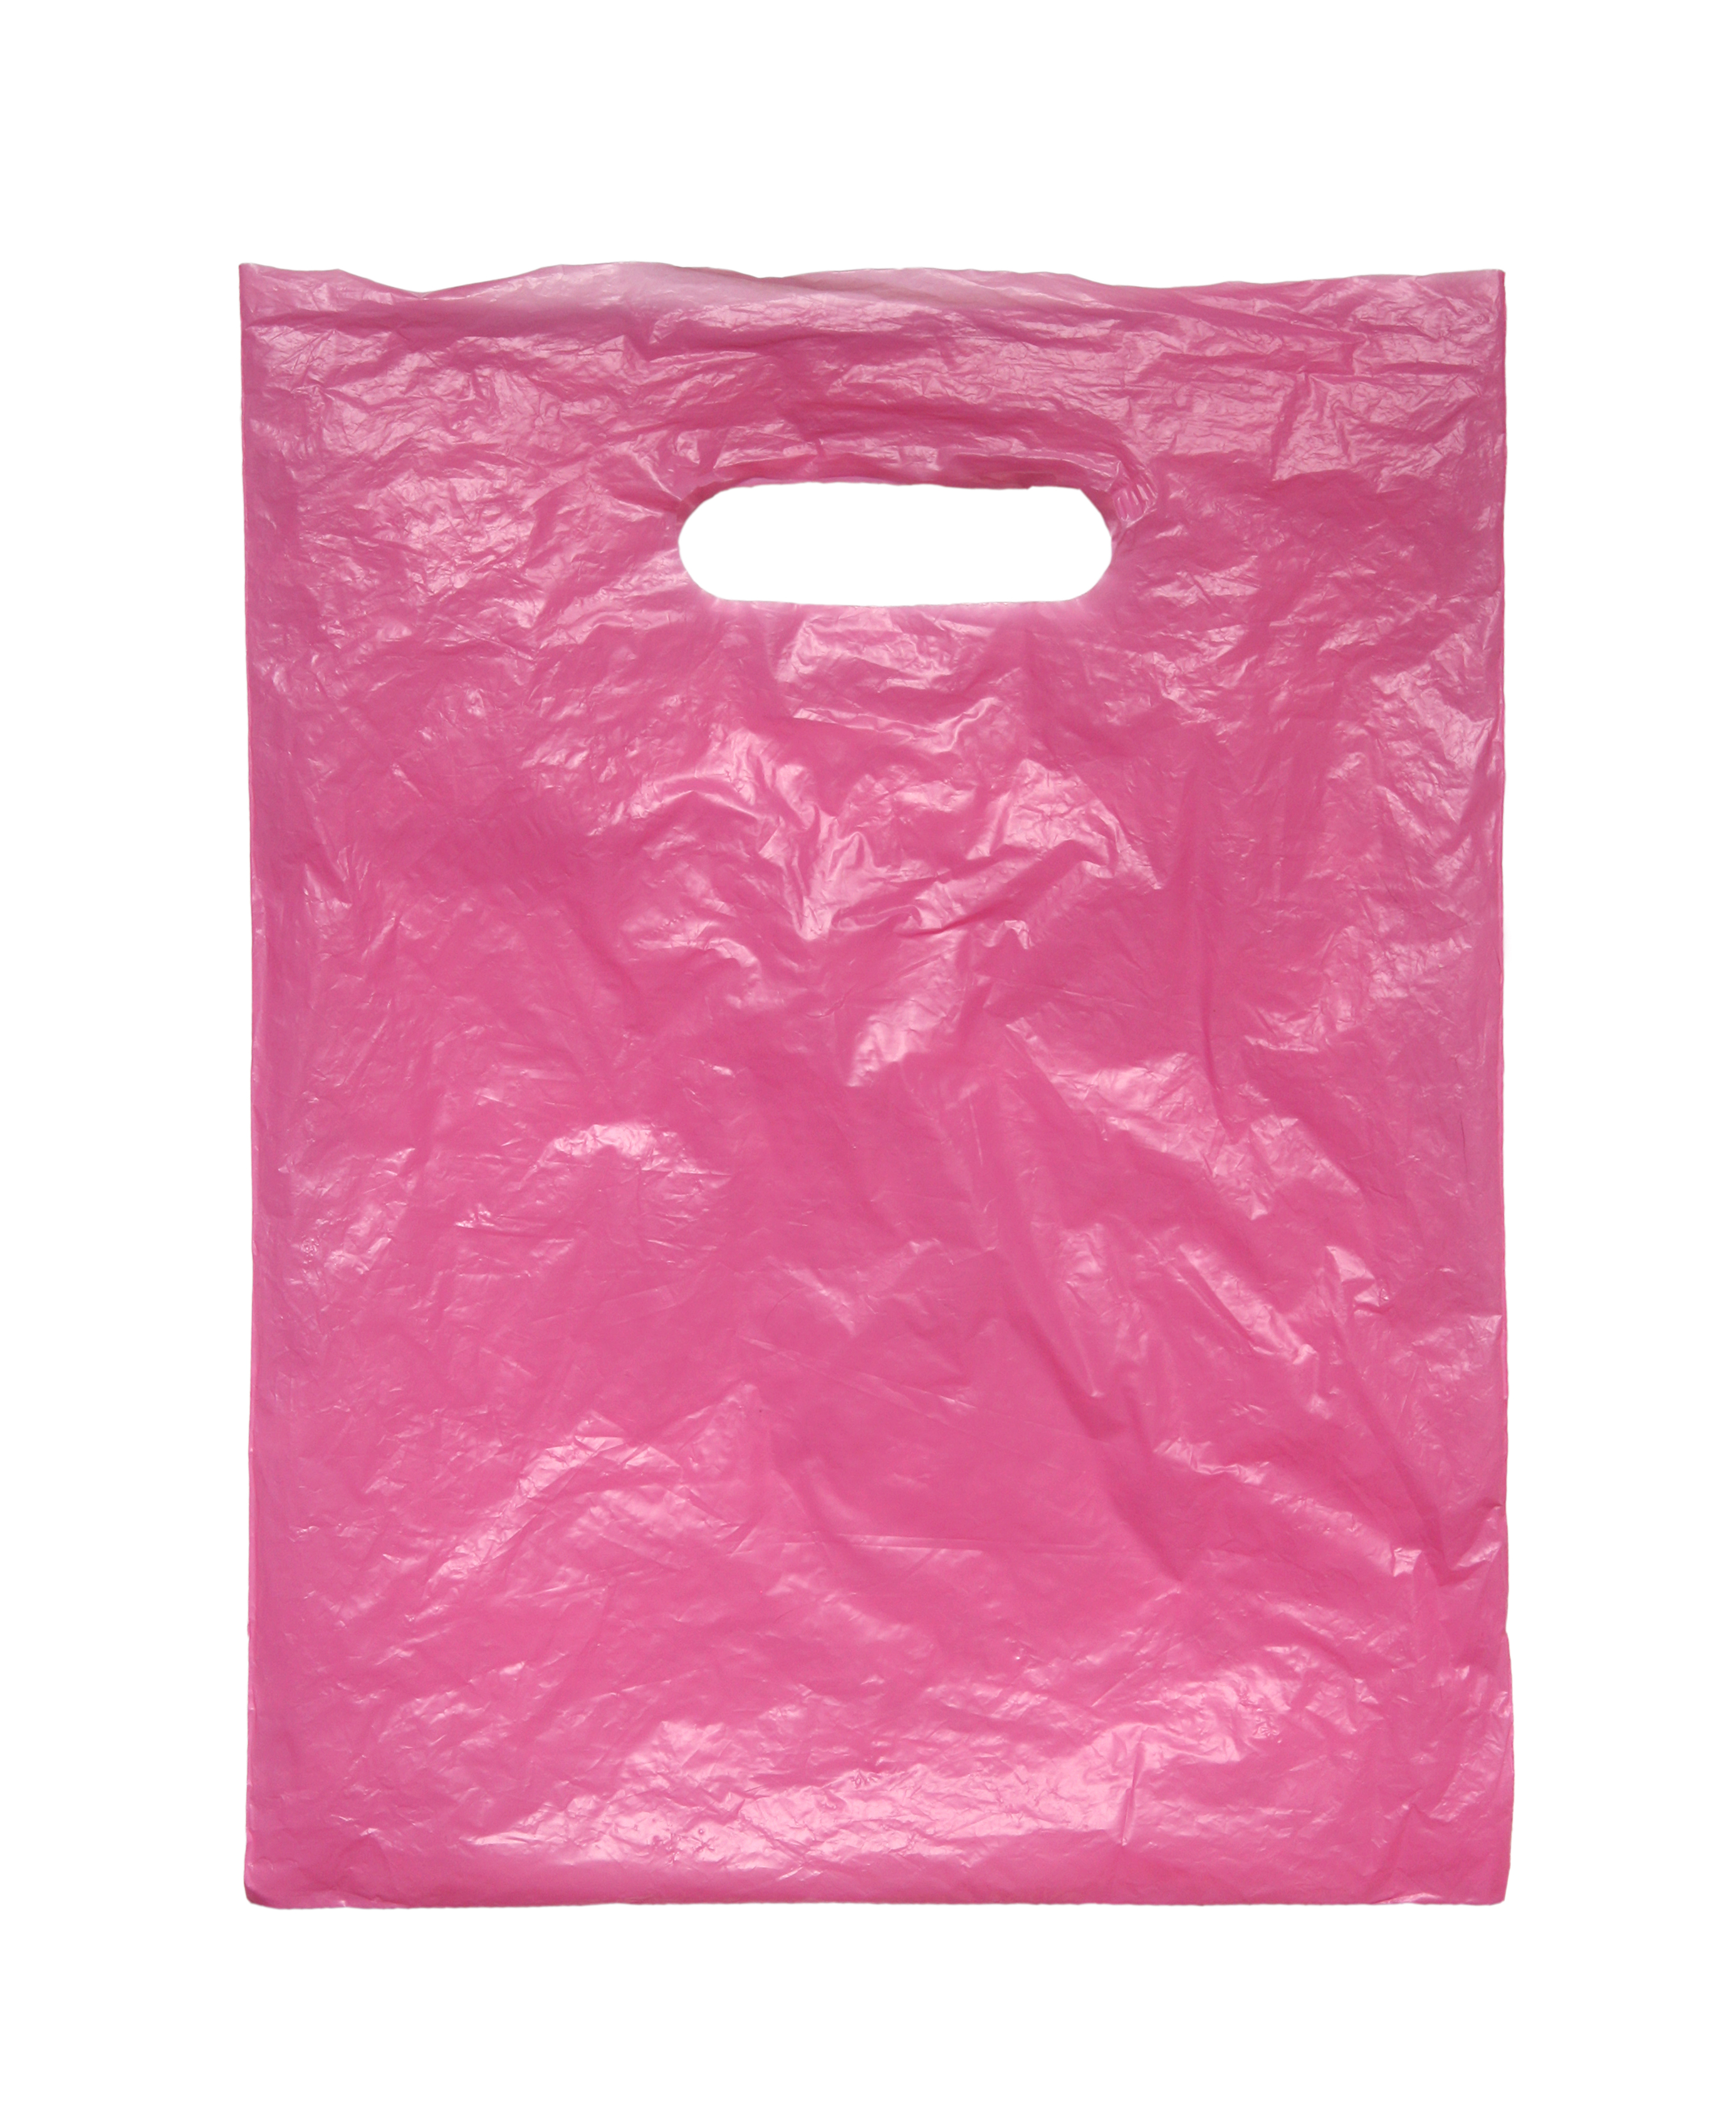 Розовый мешок на острове. Розовый пакет. Пластиковый пакет розовый. Пакет целлофановый розовый. Розовый пластмассовый пакет.